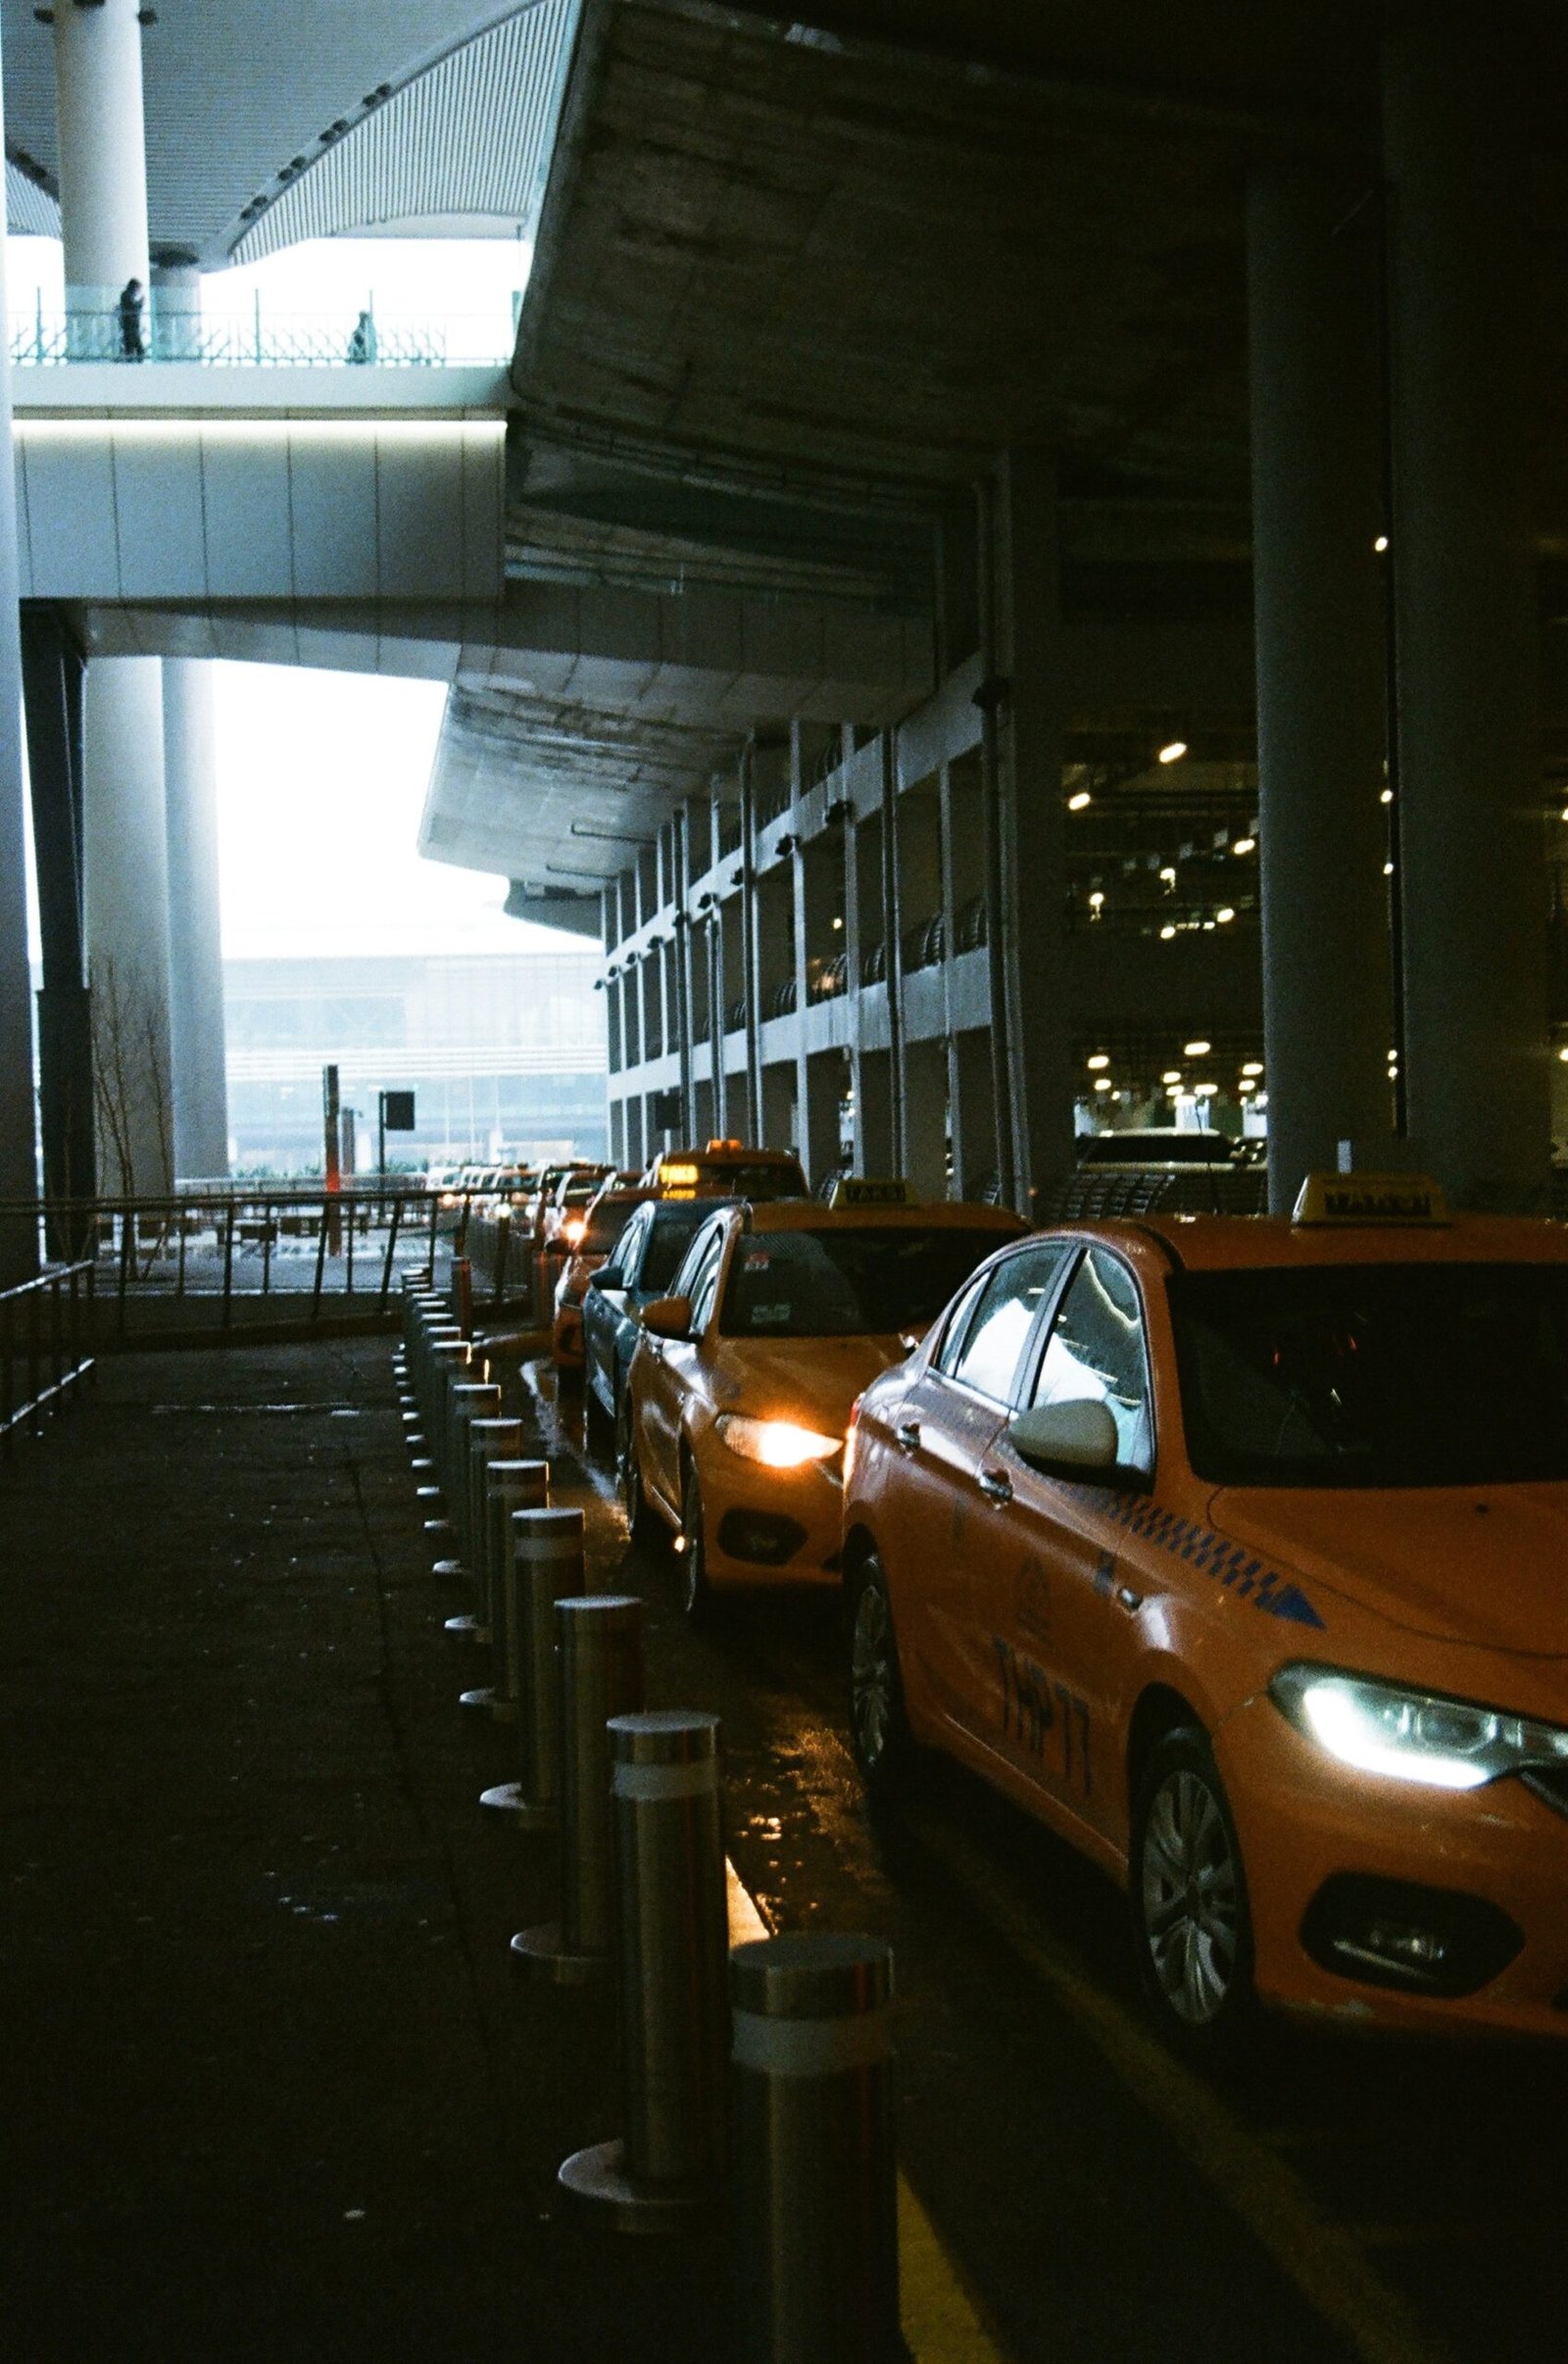 سيارات أجرة المطار في إنتظار المسافرين لتوصيلهم